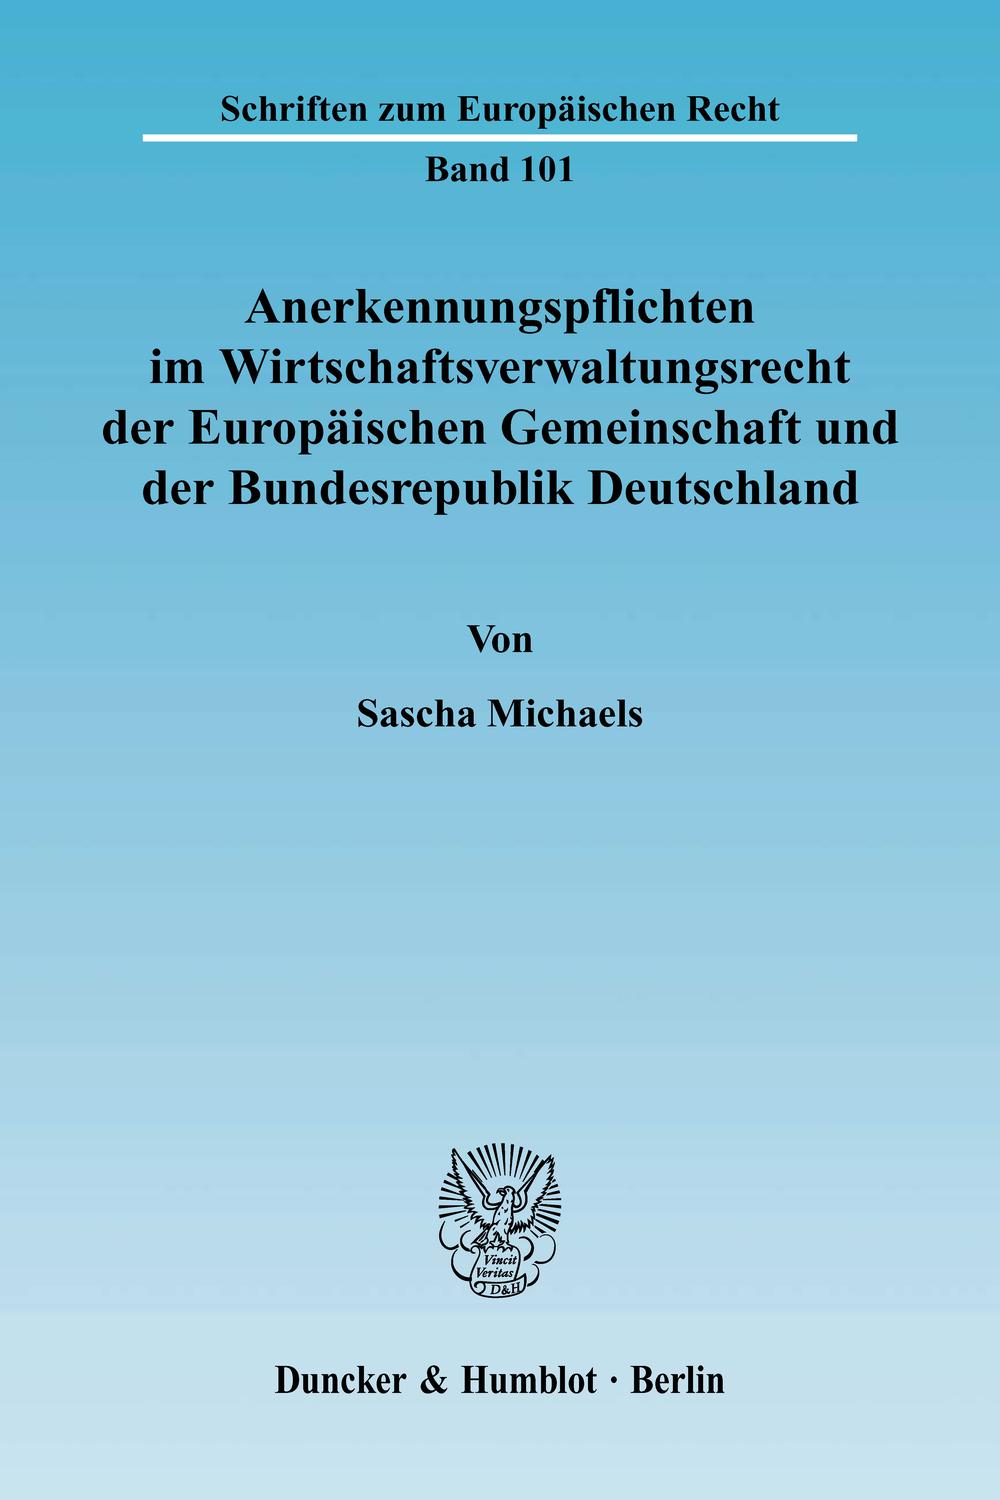 Anerkennungspflichten im Wirtschaftsverwaltungsrecht der Europäischen Gemeinschaft und der Bundesrepublik Deutschland. - Sascha Michaels